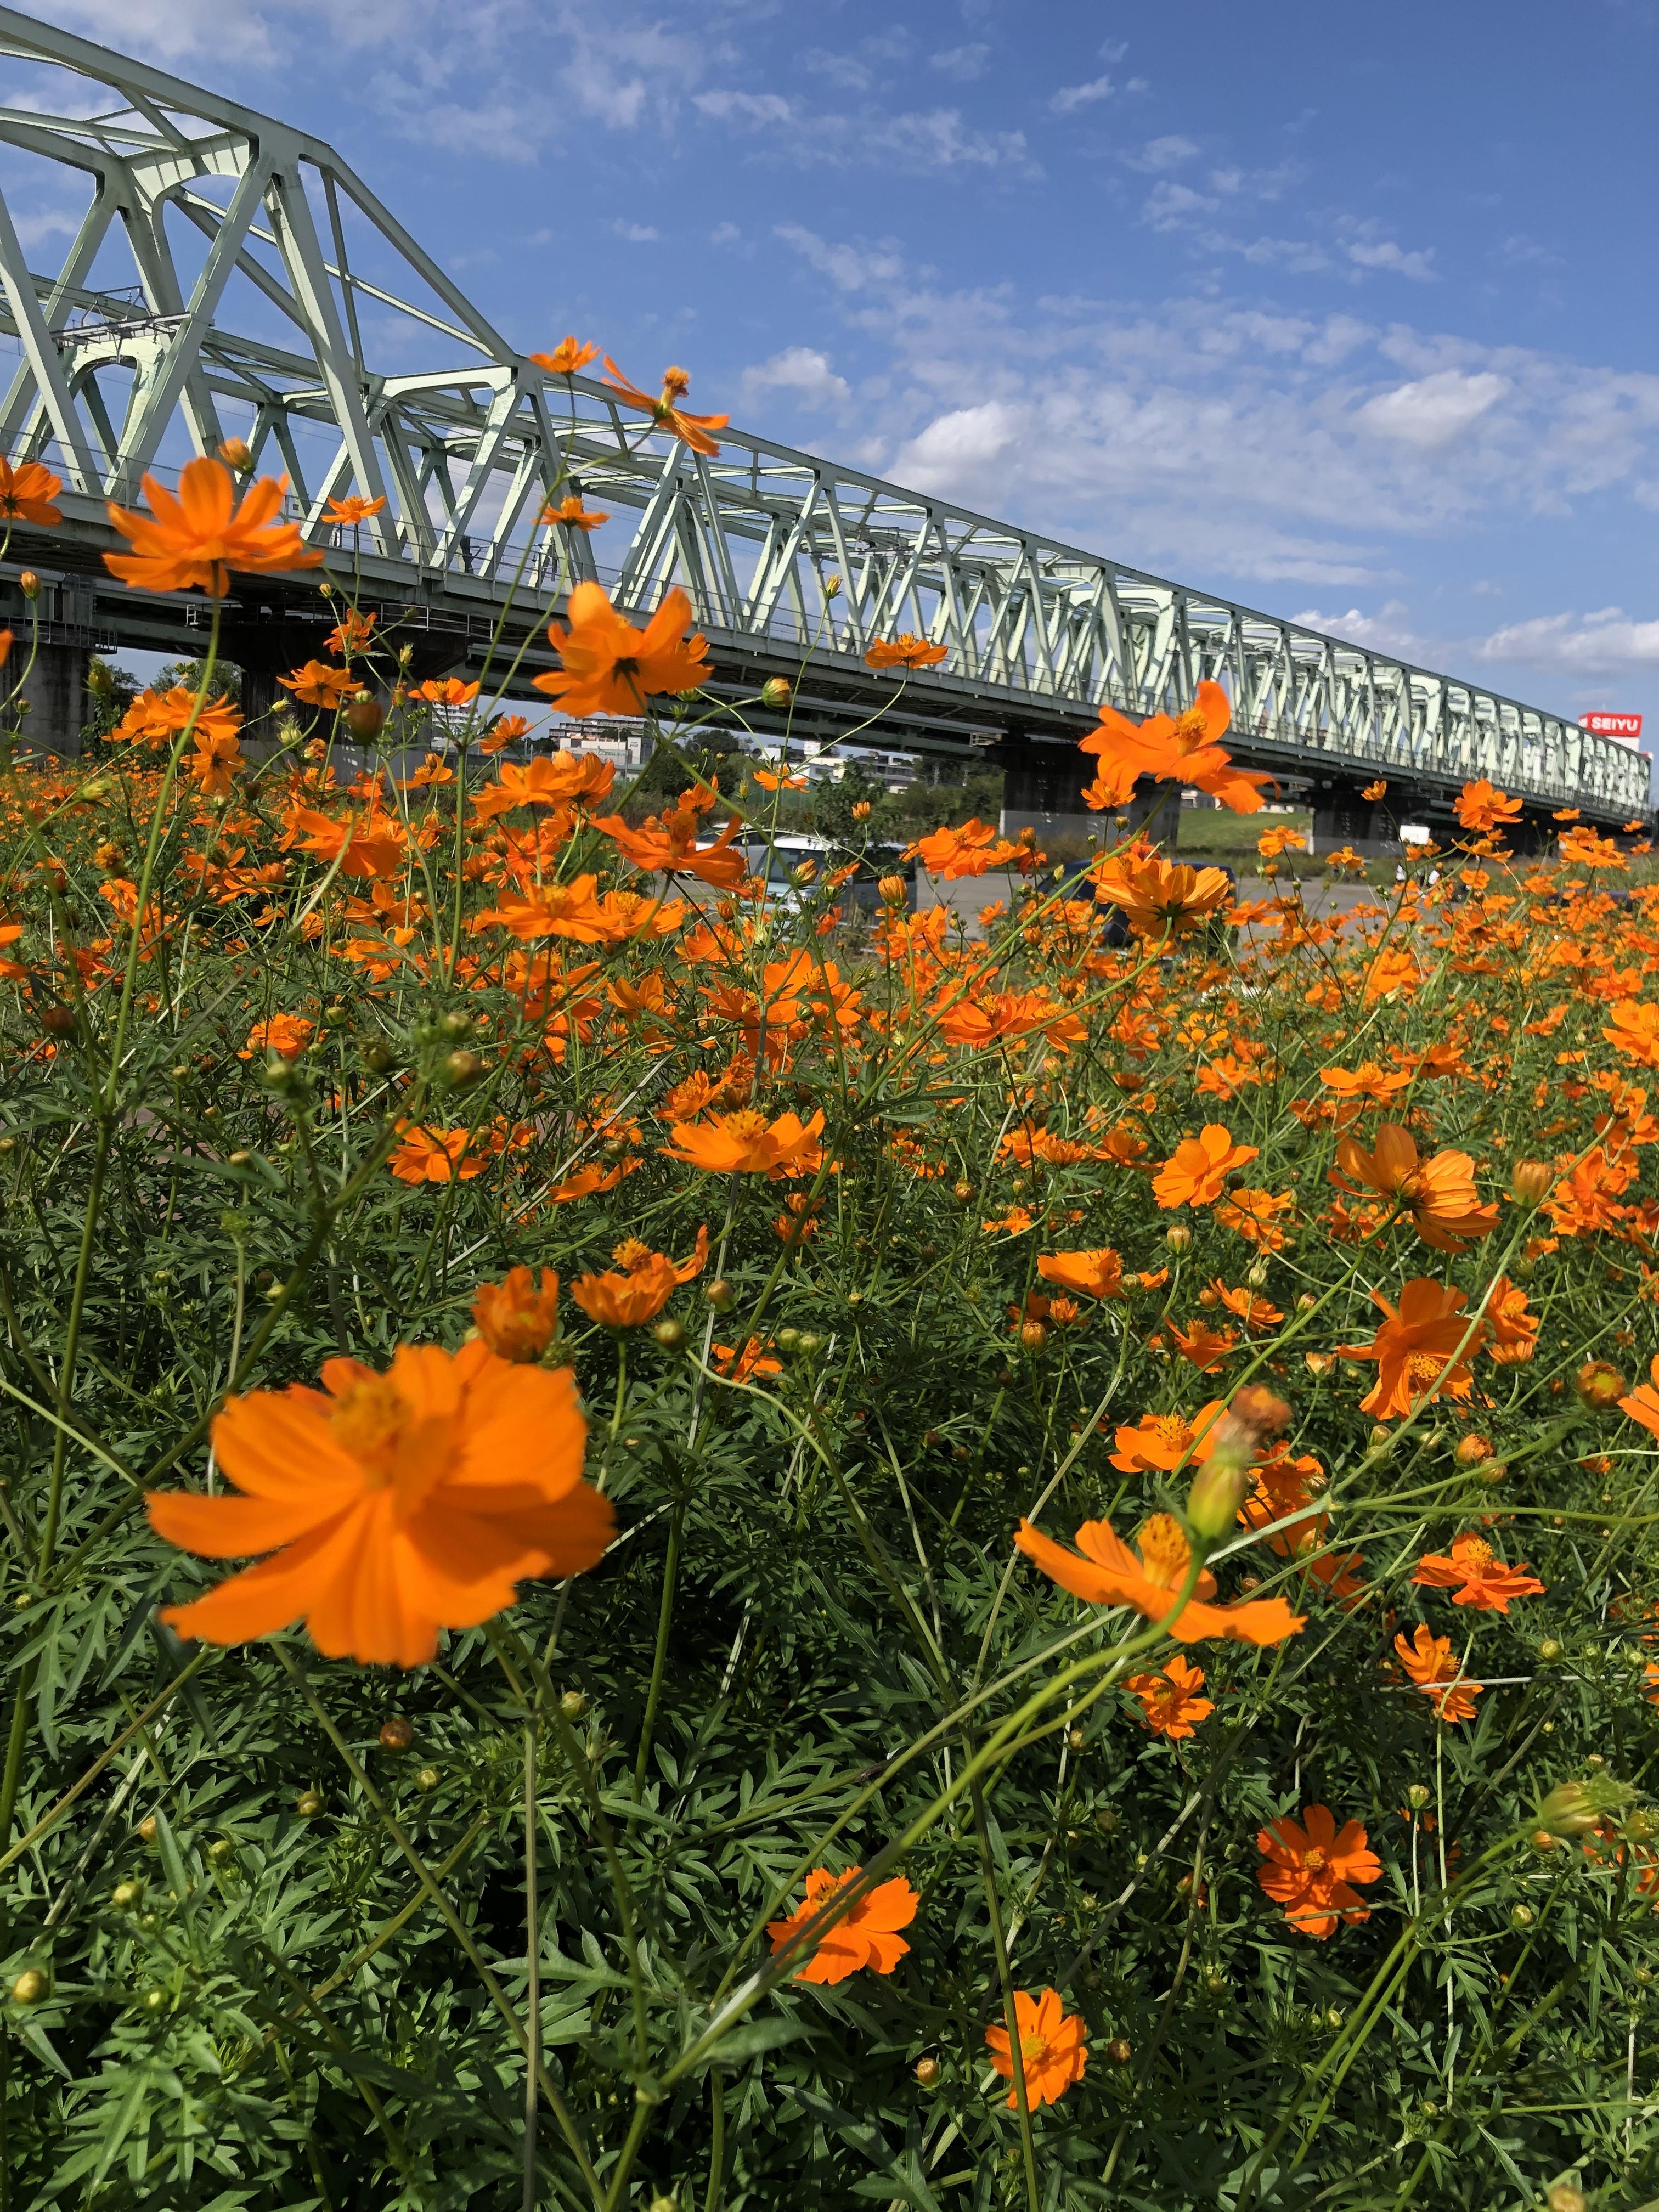 大利根橋の下に咲くオレンジ色のコスモス ほどよく絶妙とりで